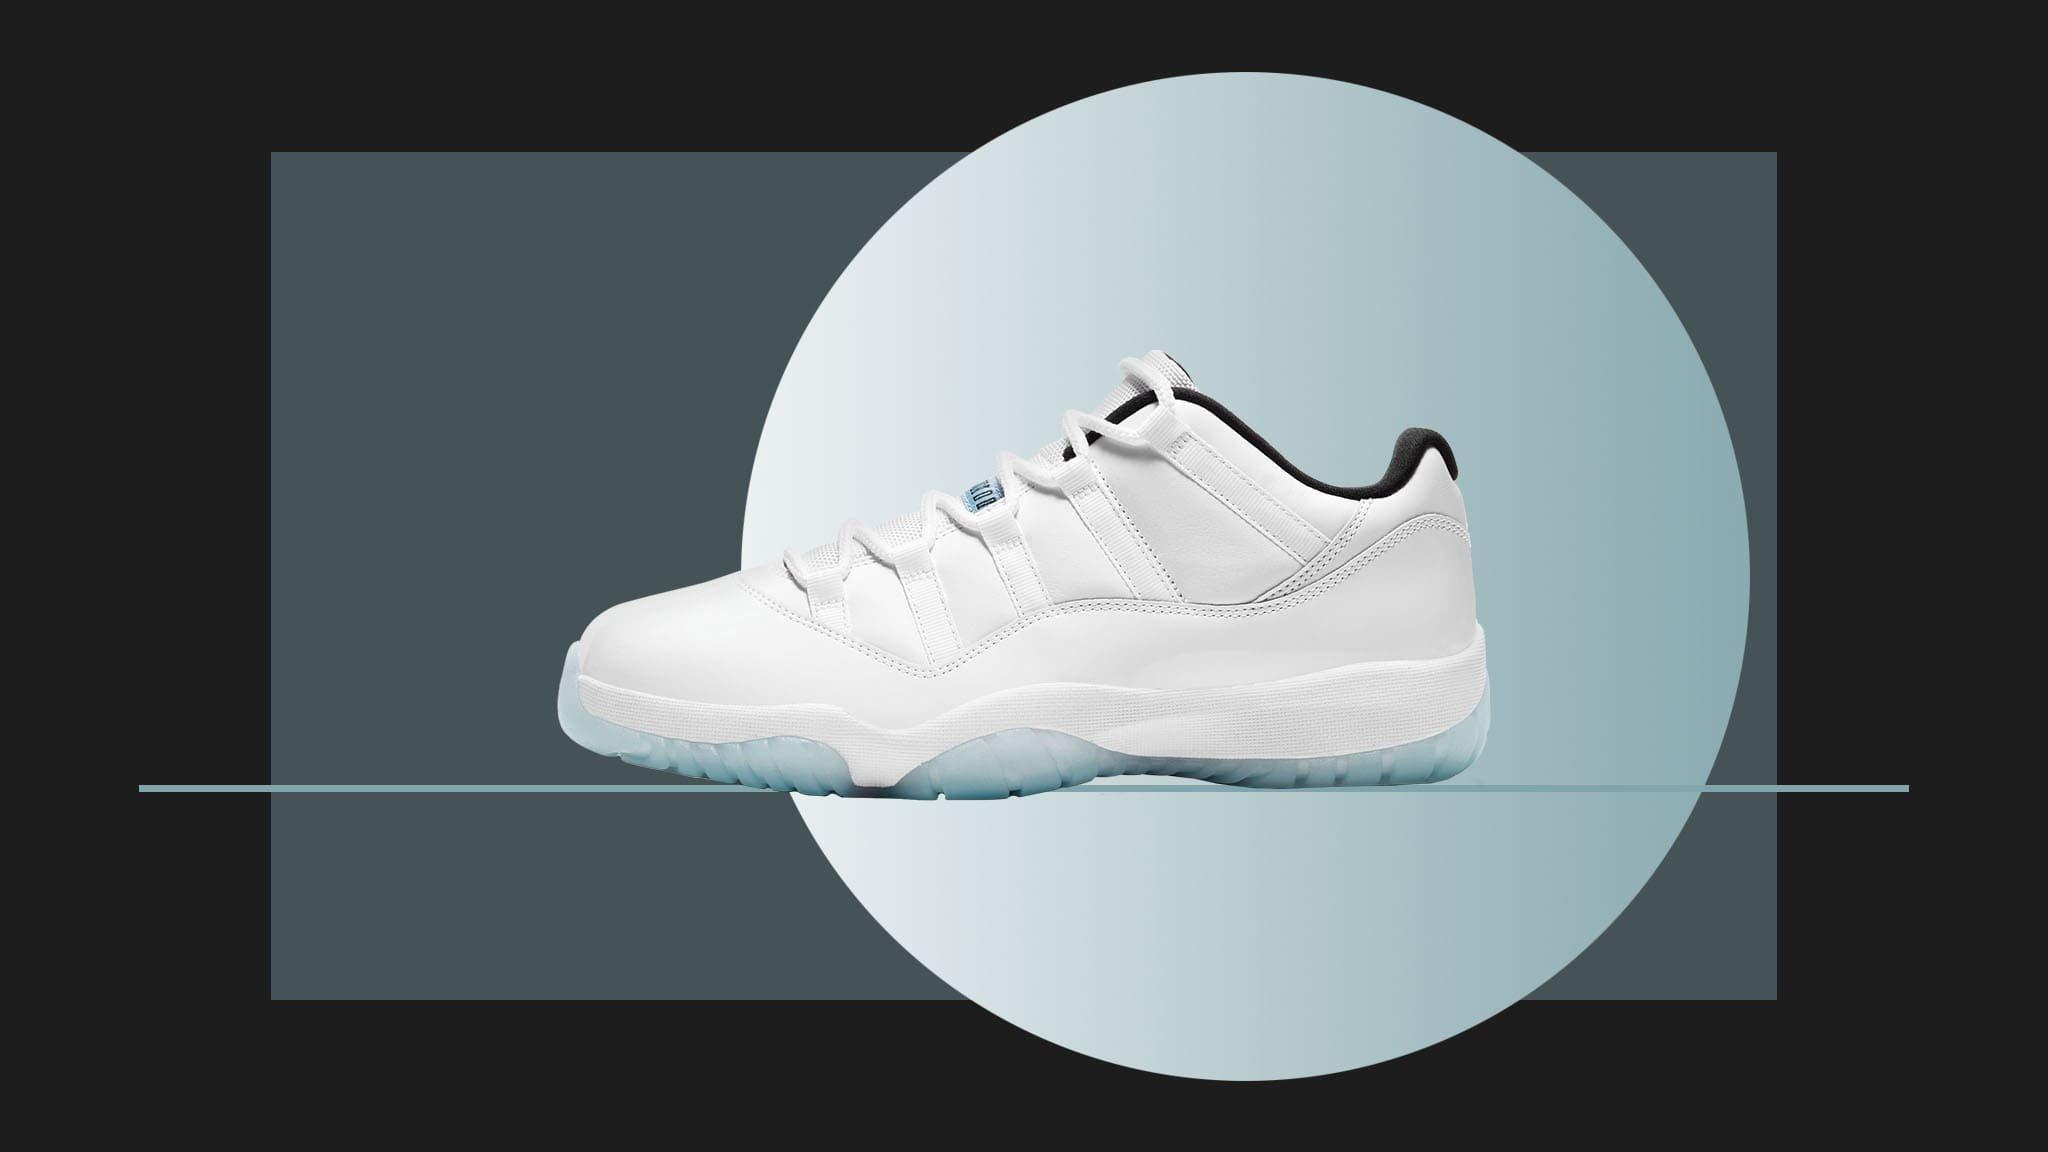 Sneakers Release- Jordan 11 Retro Low “Legend Blue” Launches 5/7